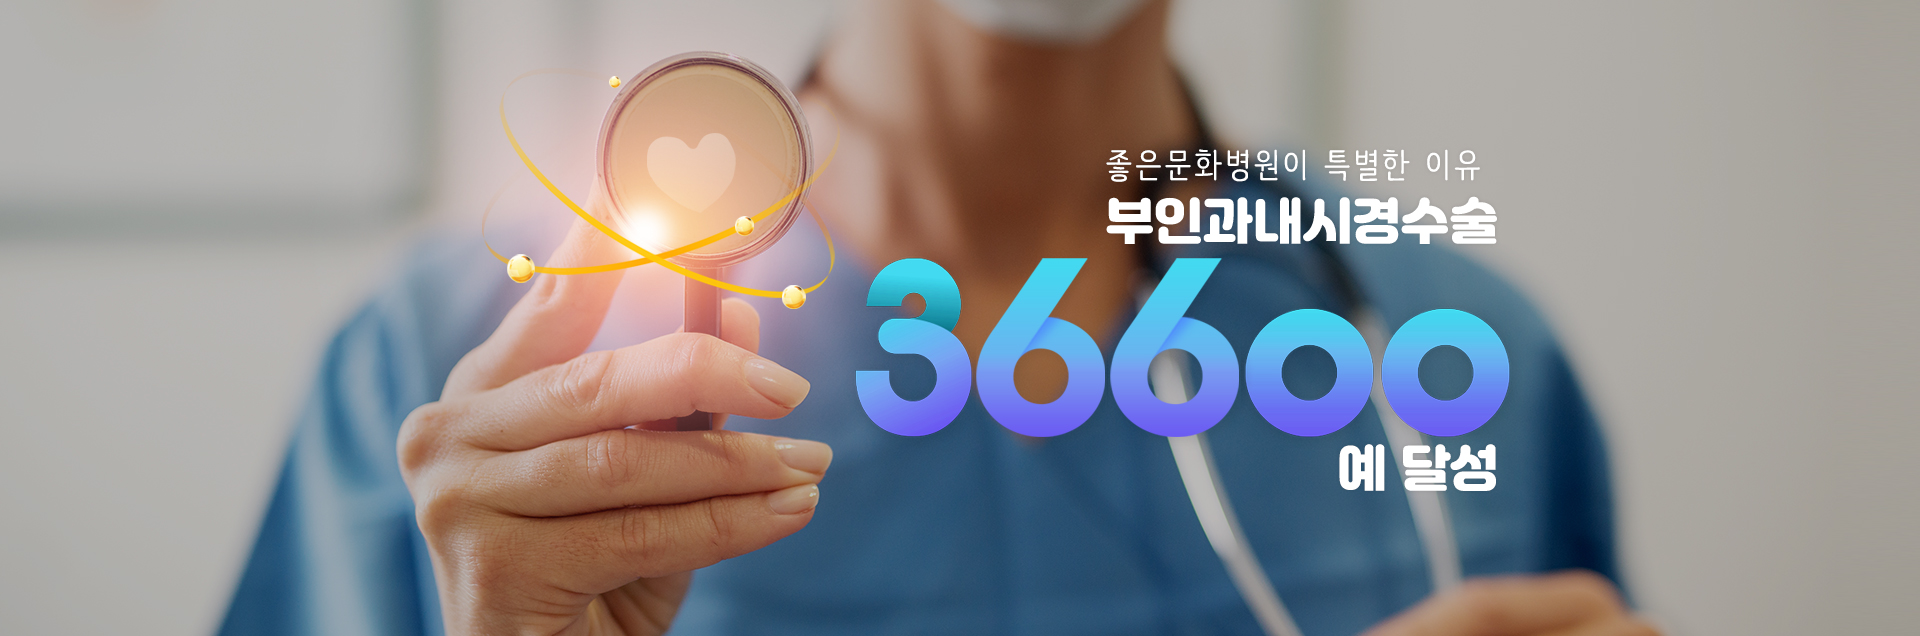 좋은문화병원이 특별한 이유 부인과내시경수술 36600 예 달성